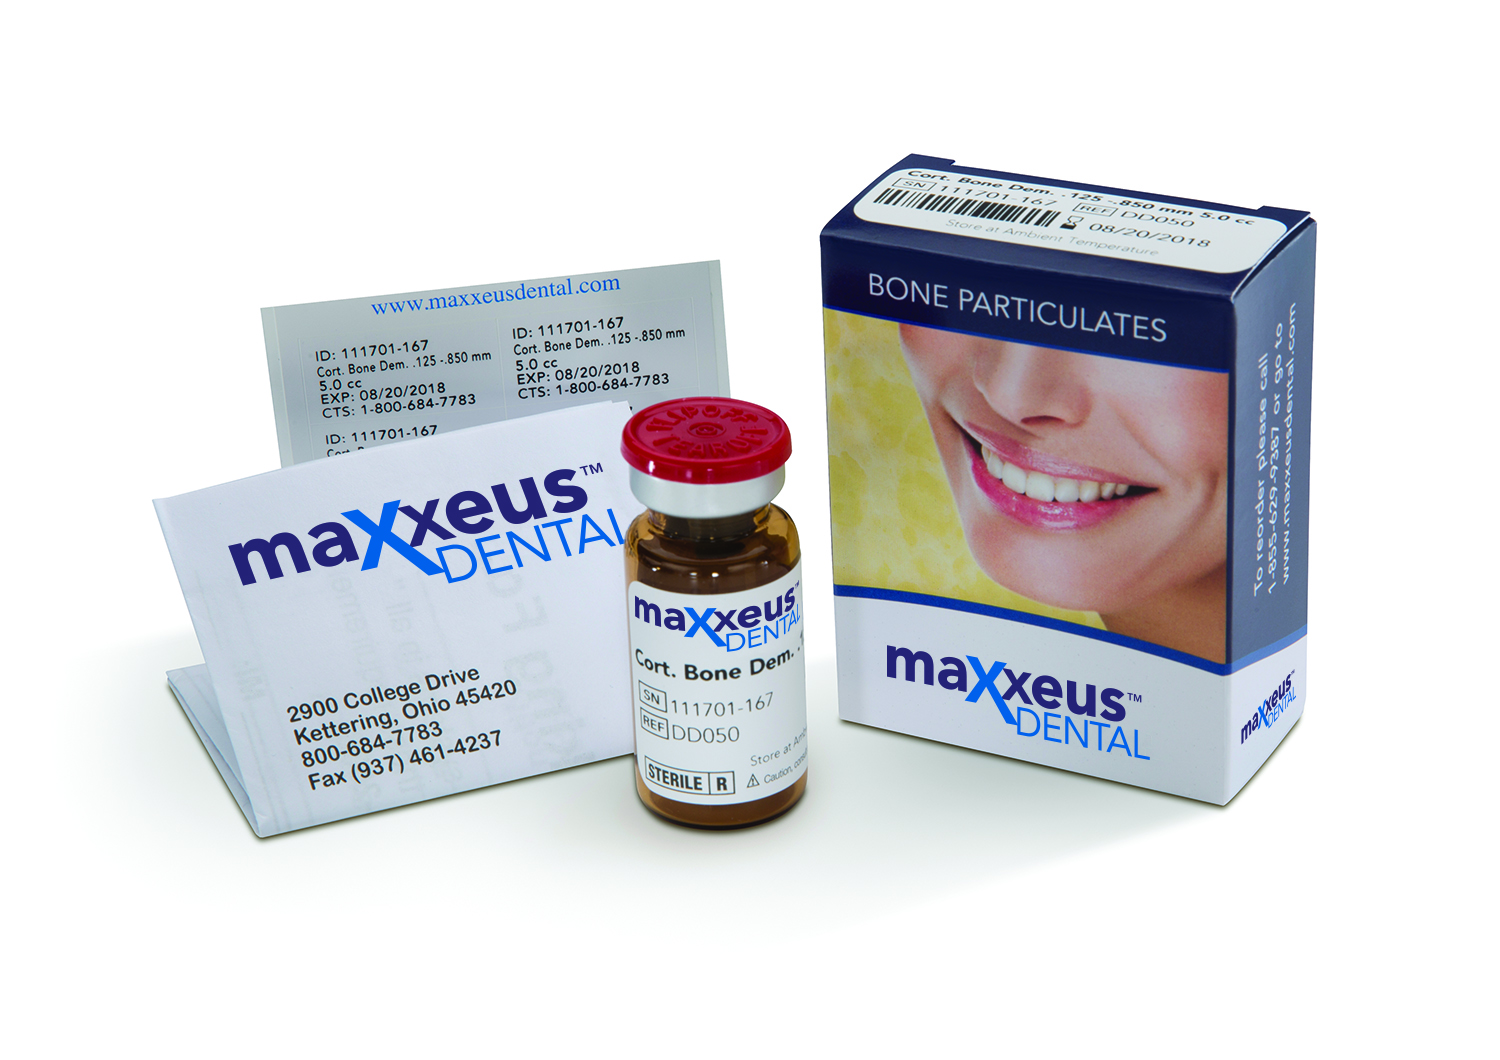 Maxxeus Dental Pkg